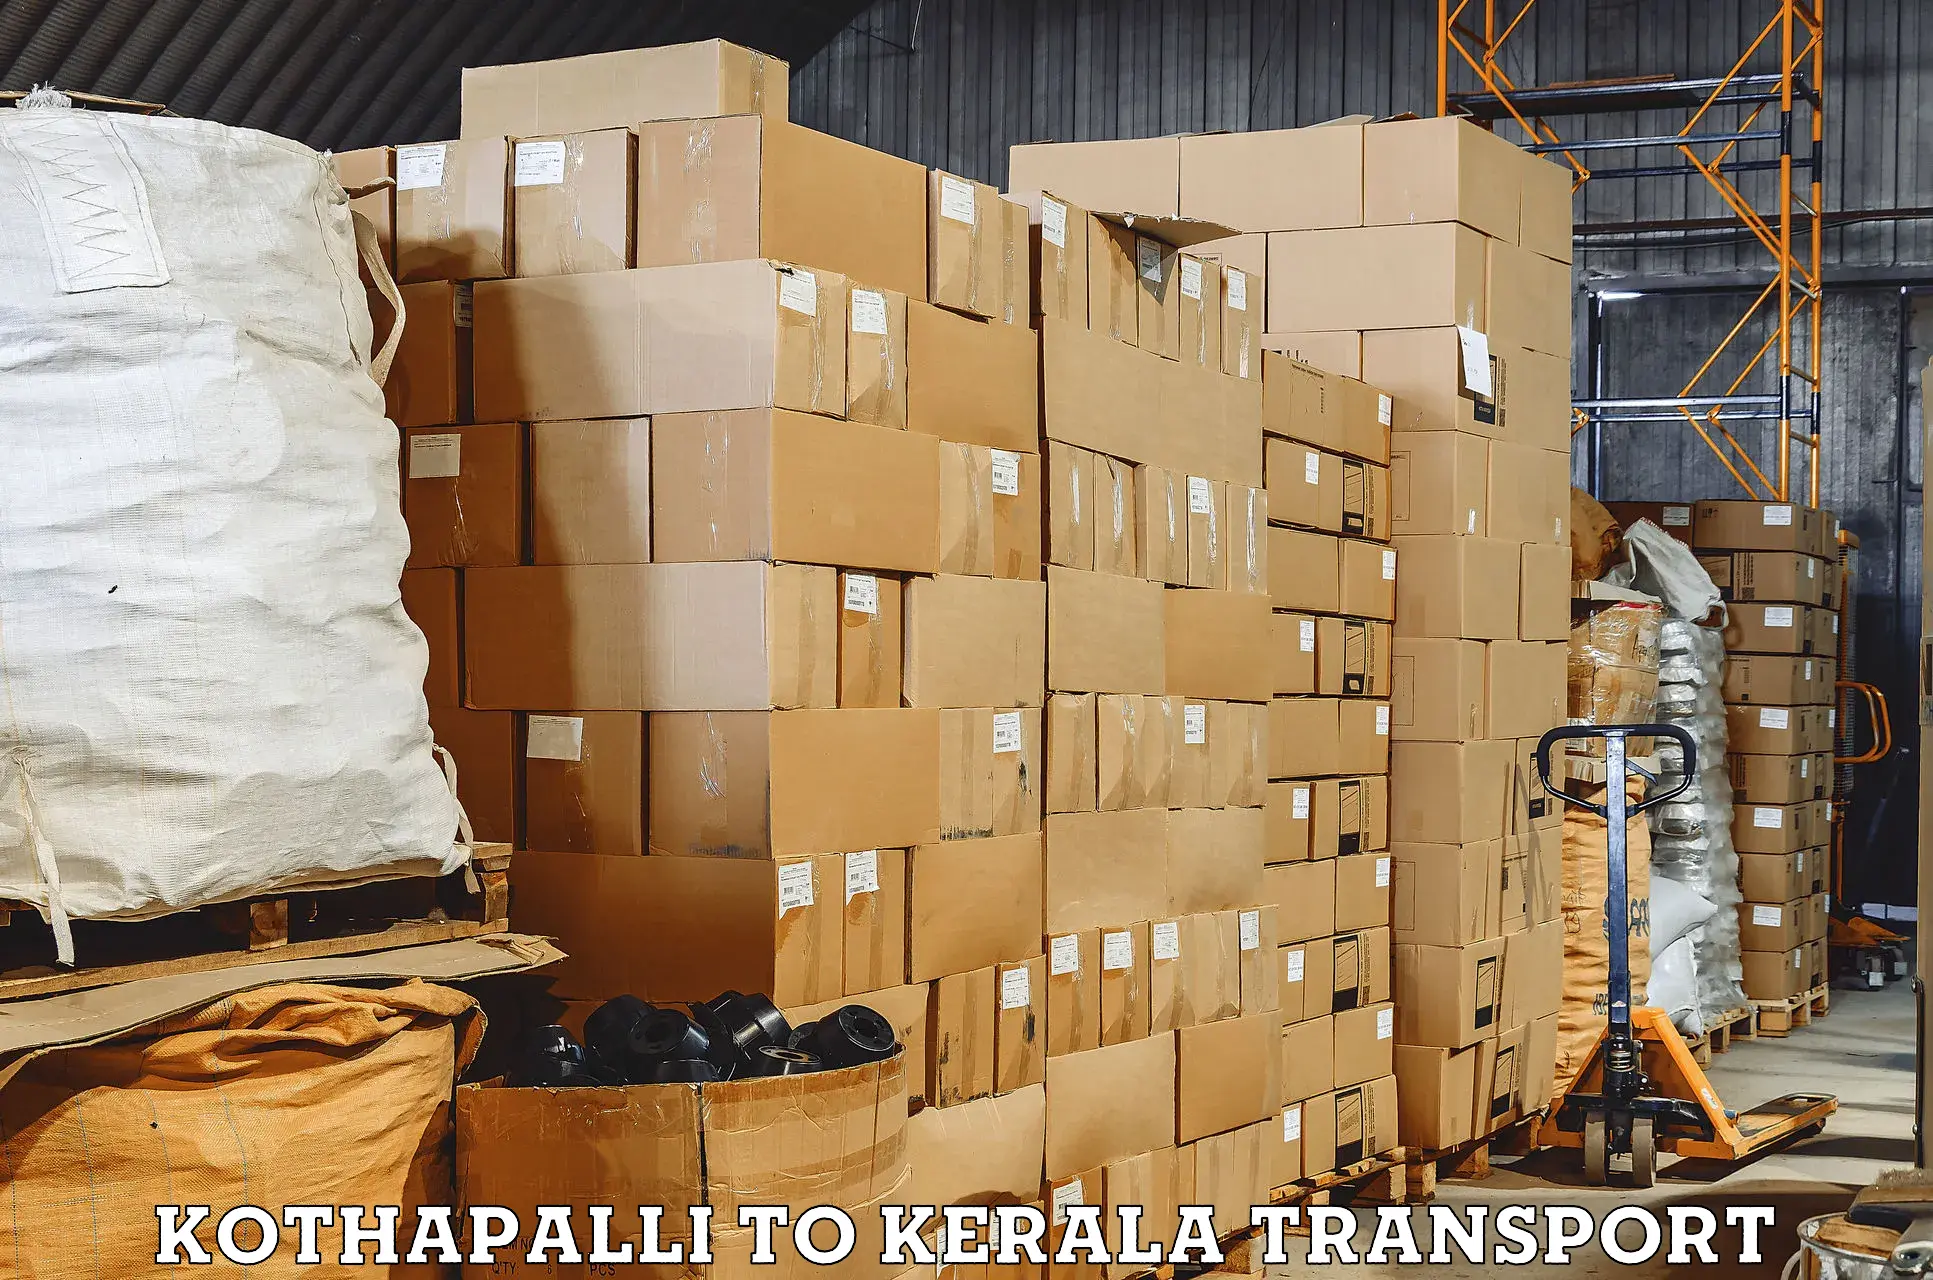 Nearest transport service Kothapalli to Kannapuram